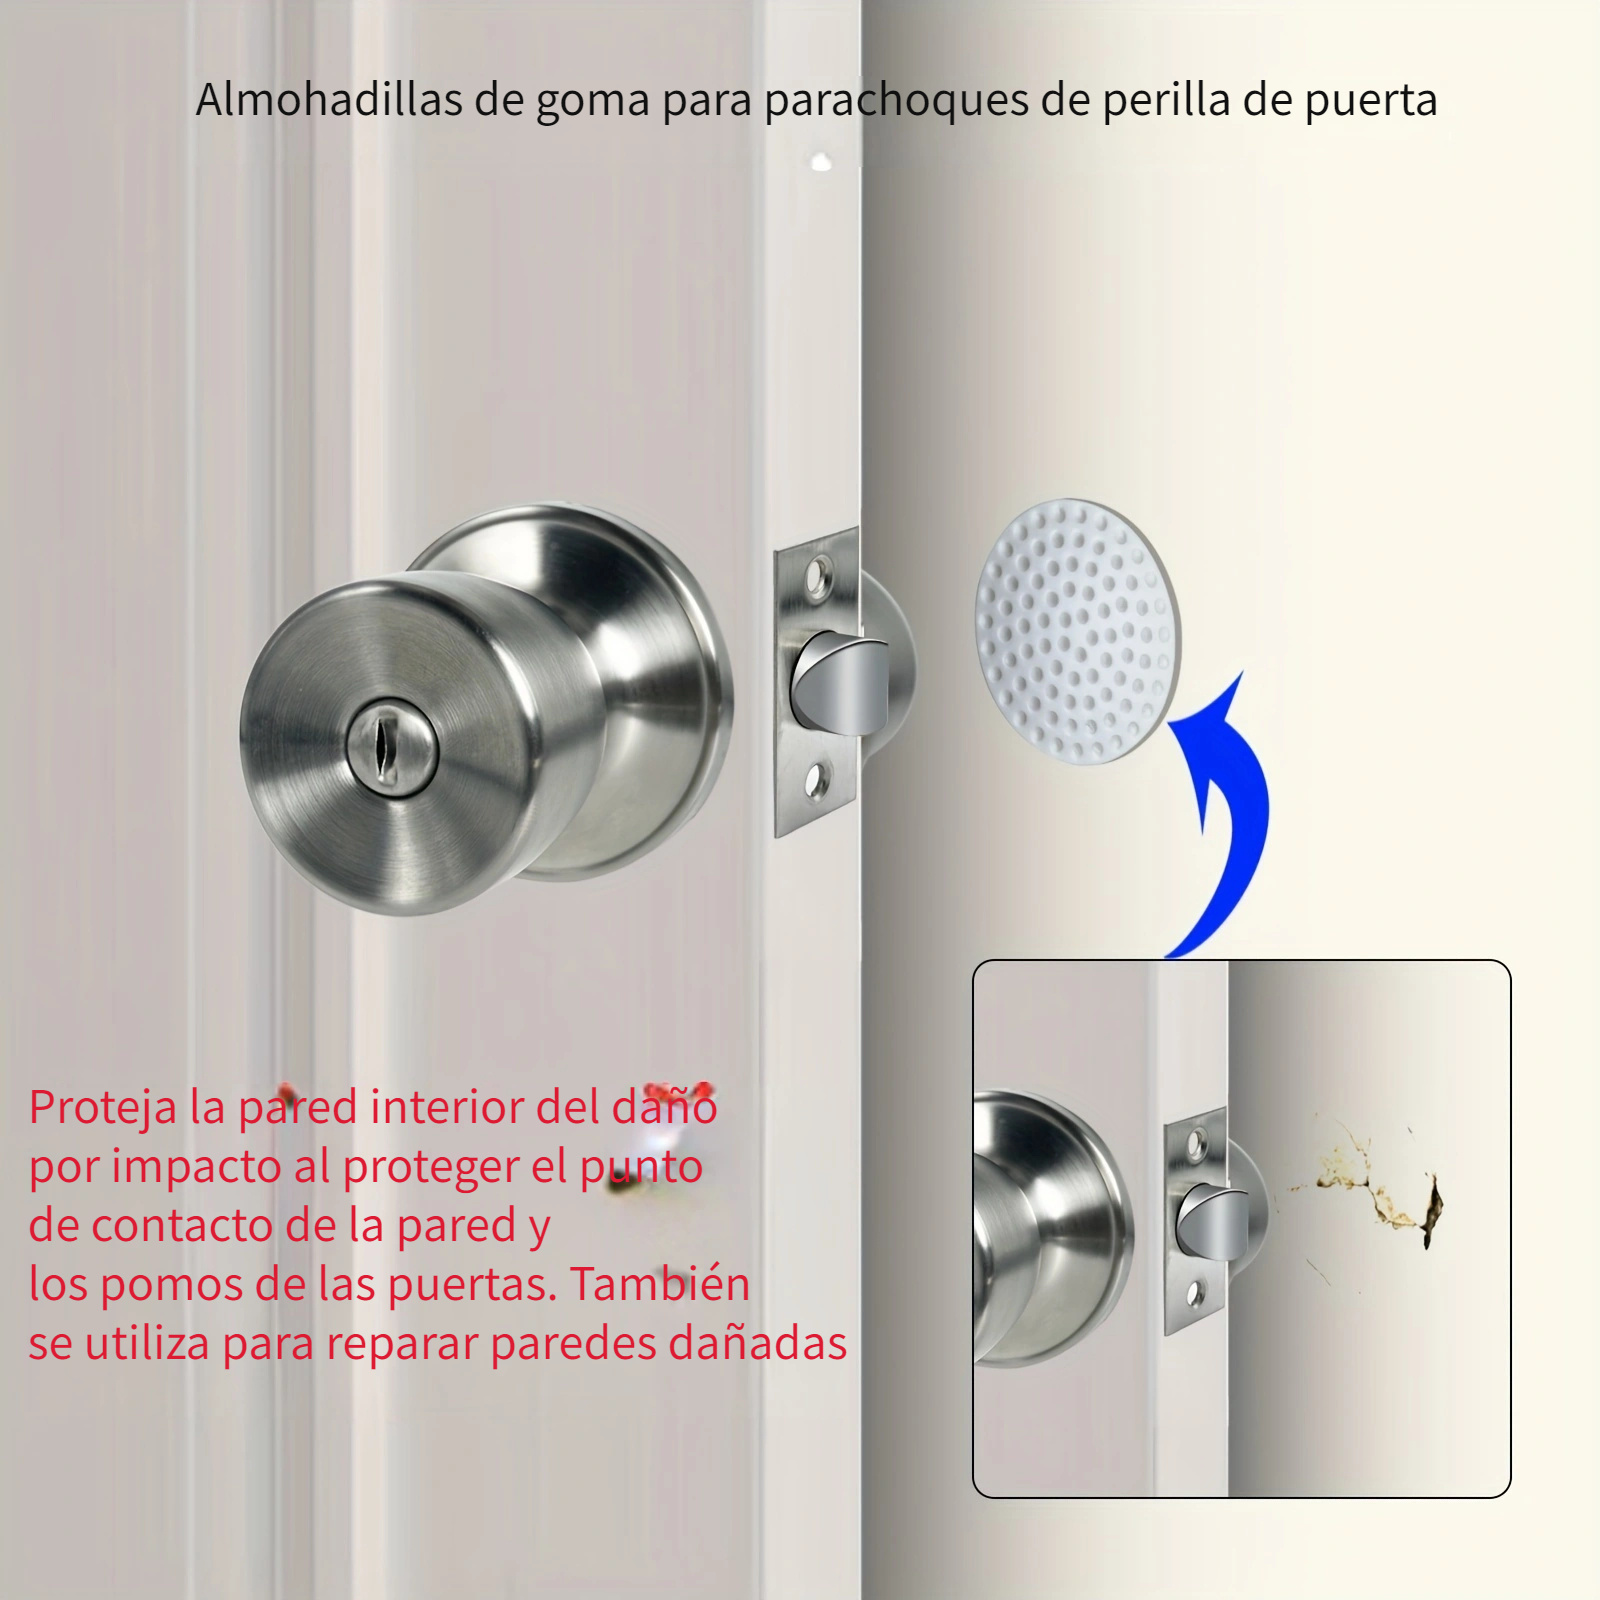 ᐅ Tipos de cerrojo para instalar en puertas • NOCTE ™